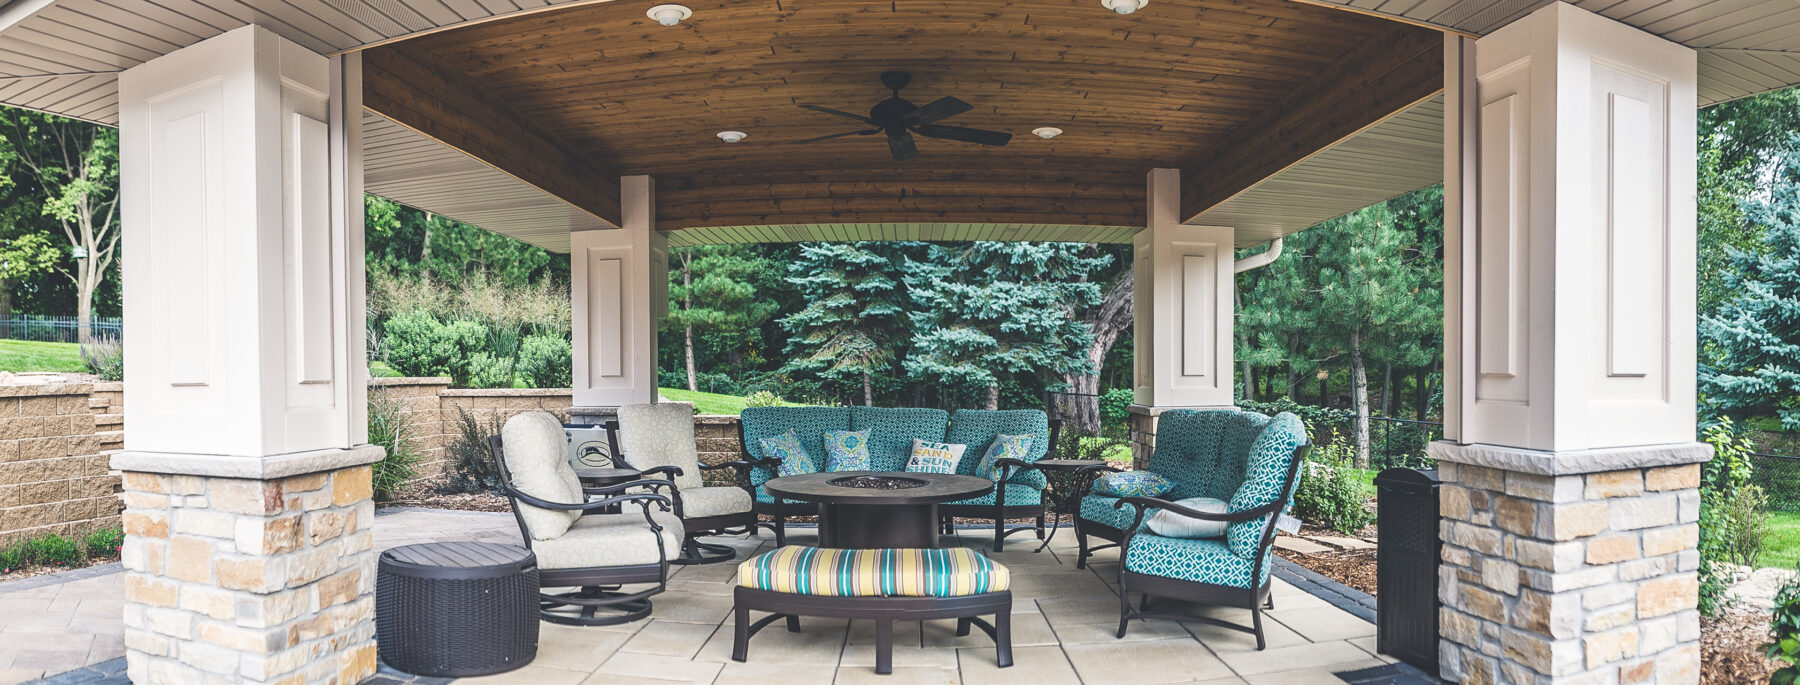 backyard cabana with outdoor furniture